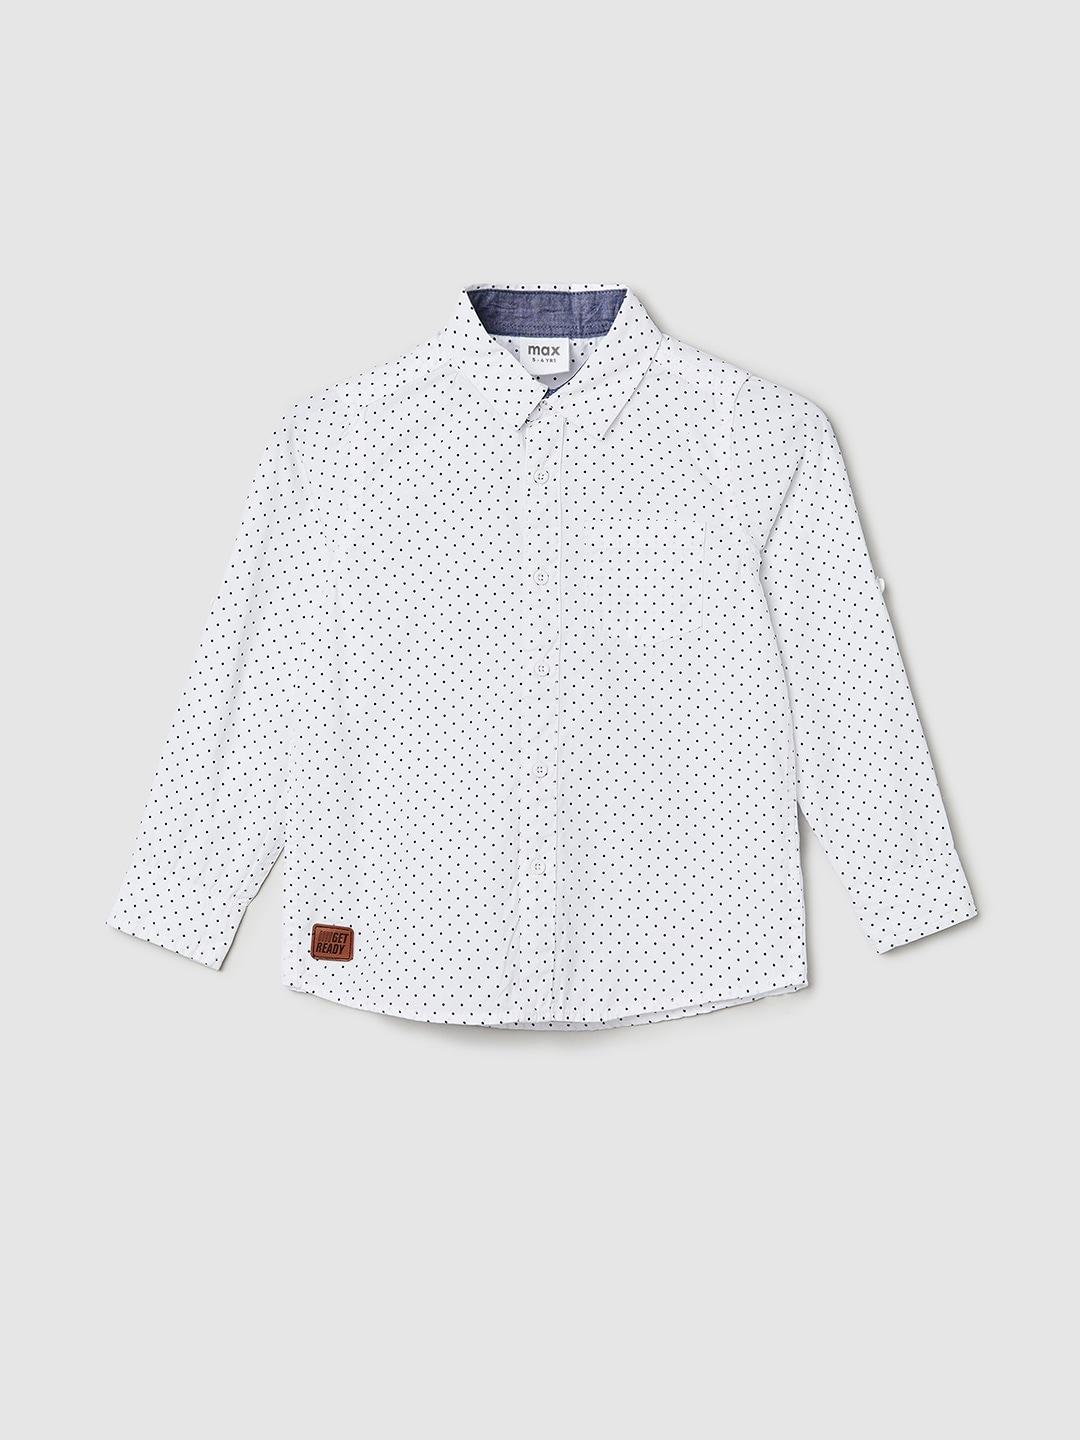 max Boys Polka Dots Printed Pure Cotton Casual Shirt